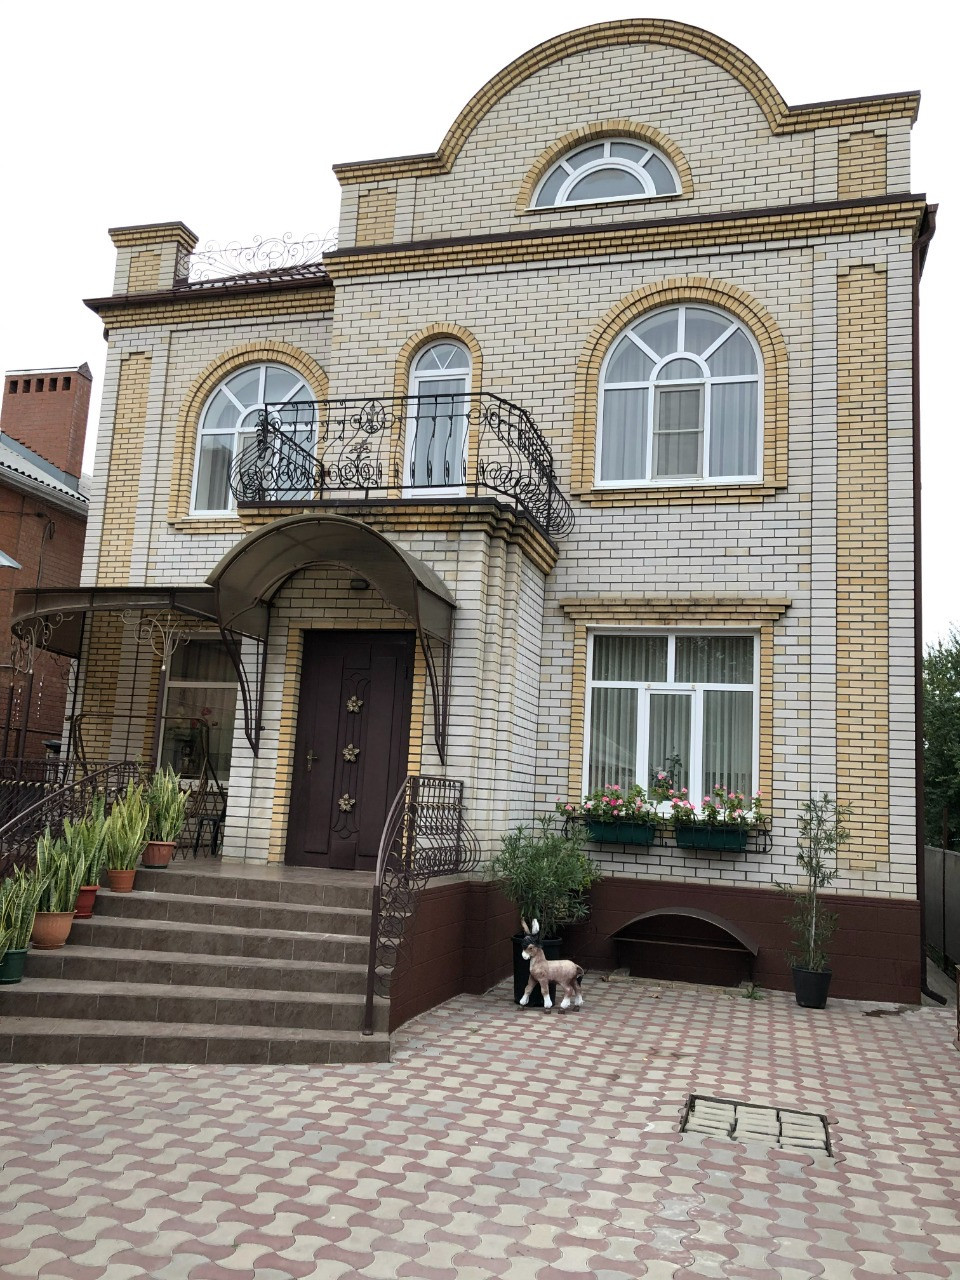 Дом в Таганроге